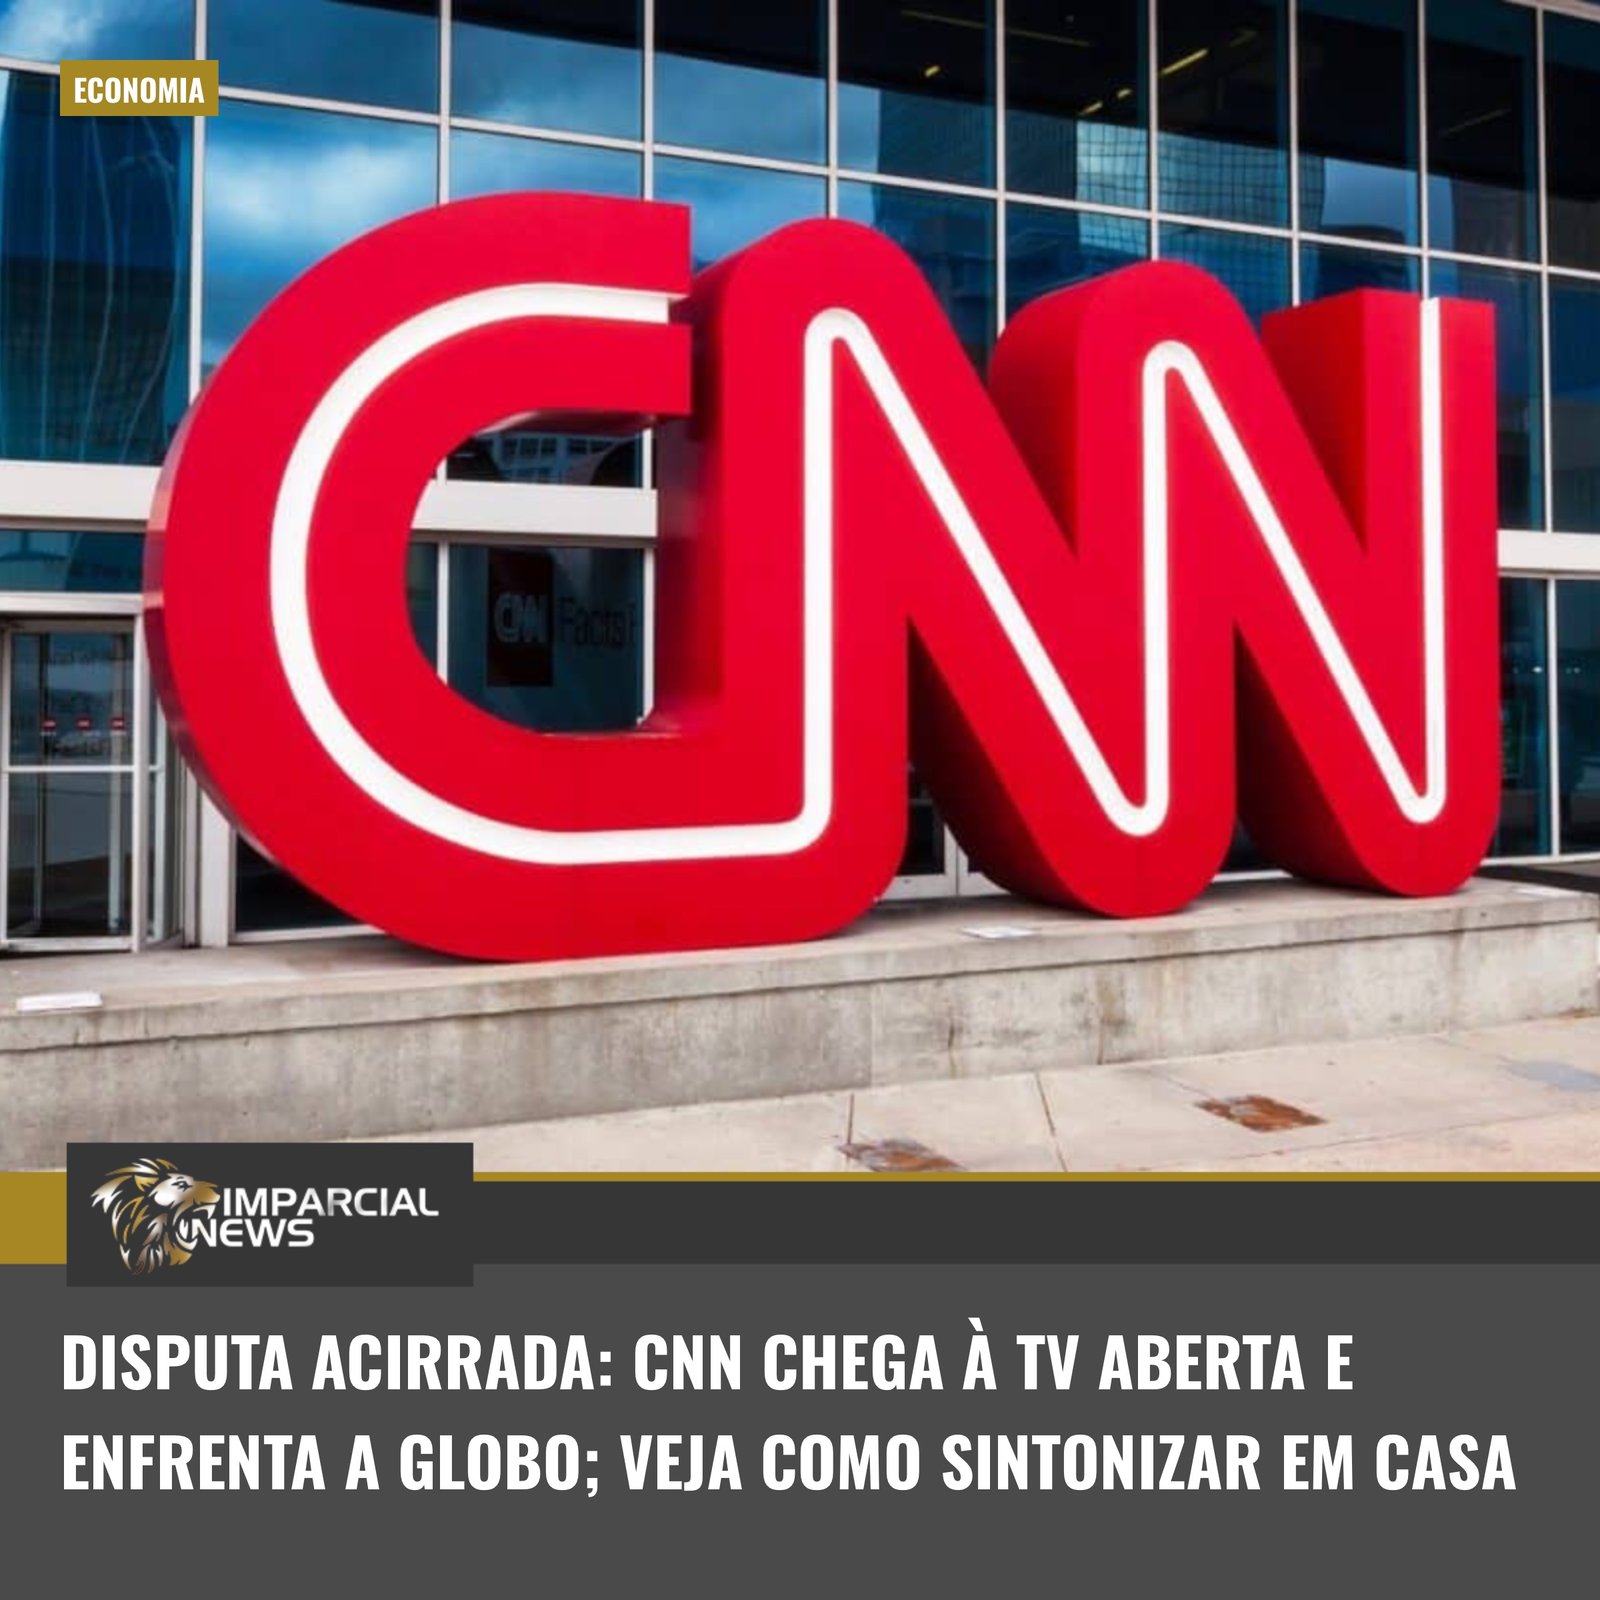  격렬한 논쟁: CNN이 공개 TV에 도착하여 Globo와 대면합니다. 집에서 조정하는 방법 보기